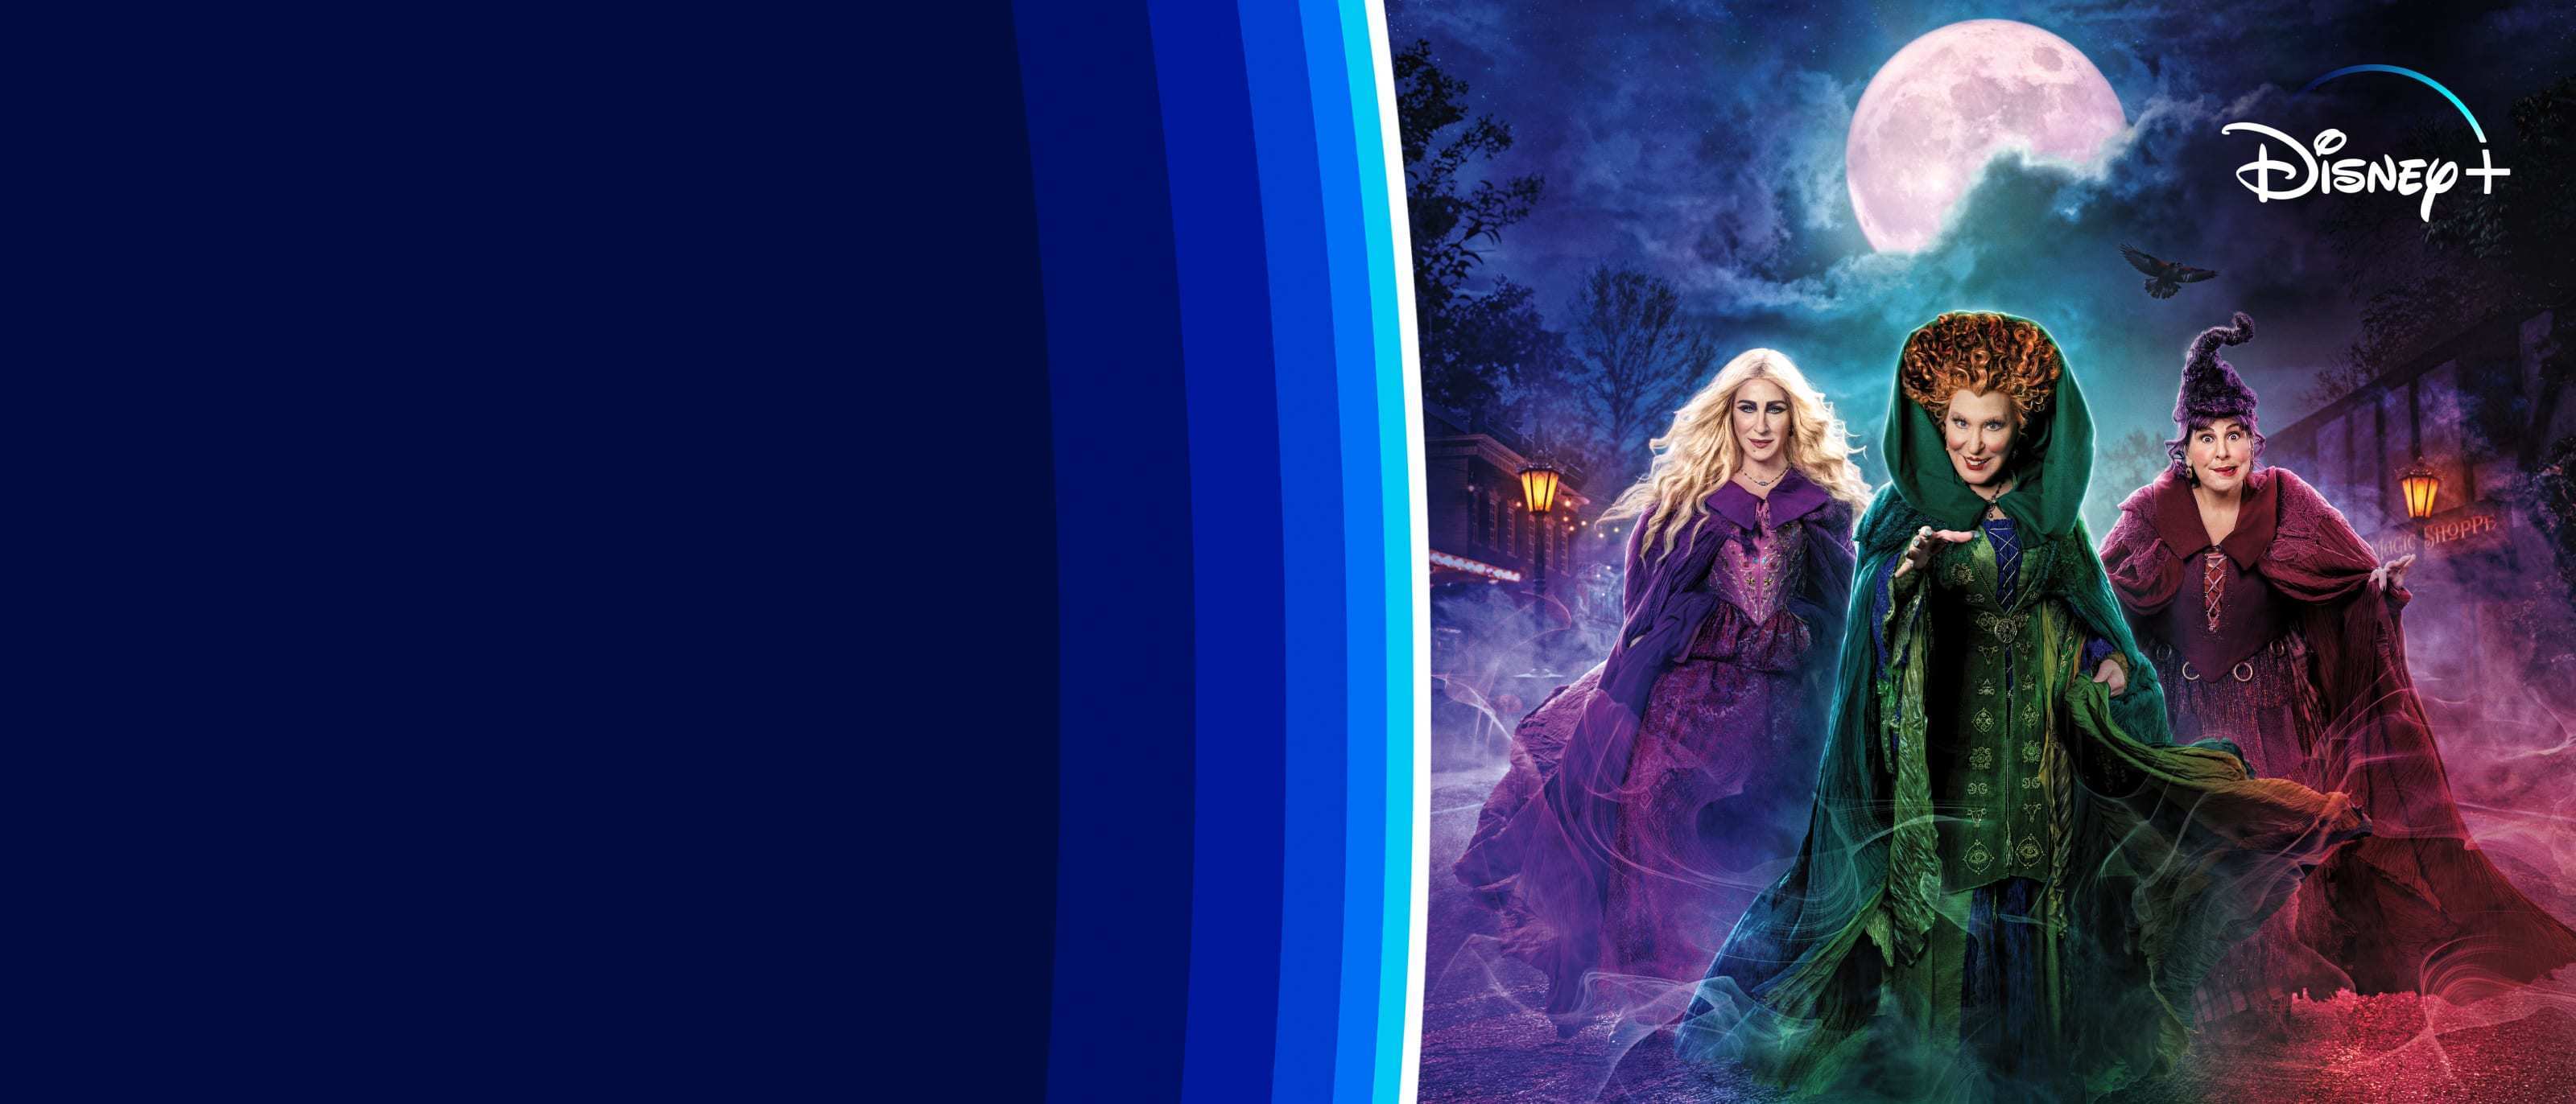 El retorno de las brujas 2 disponible para ver en Disney+